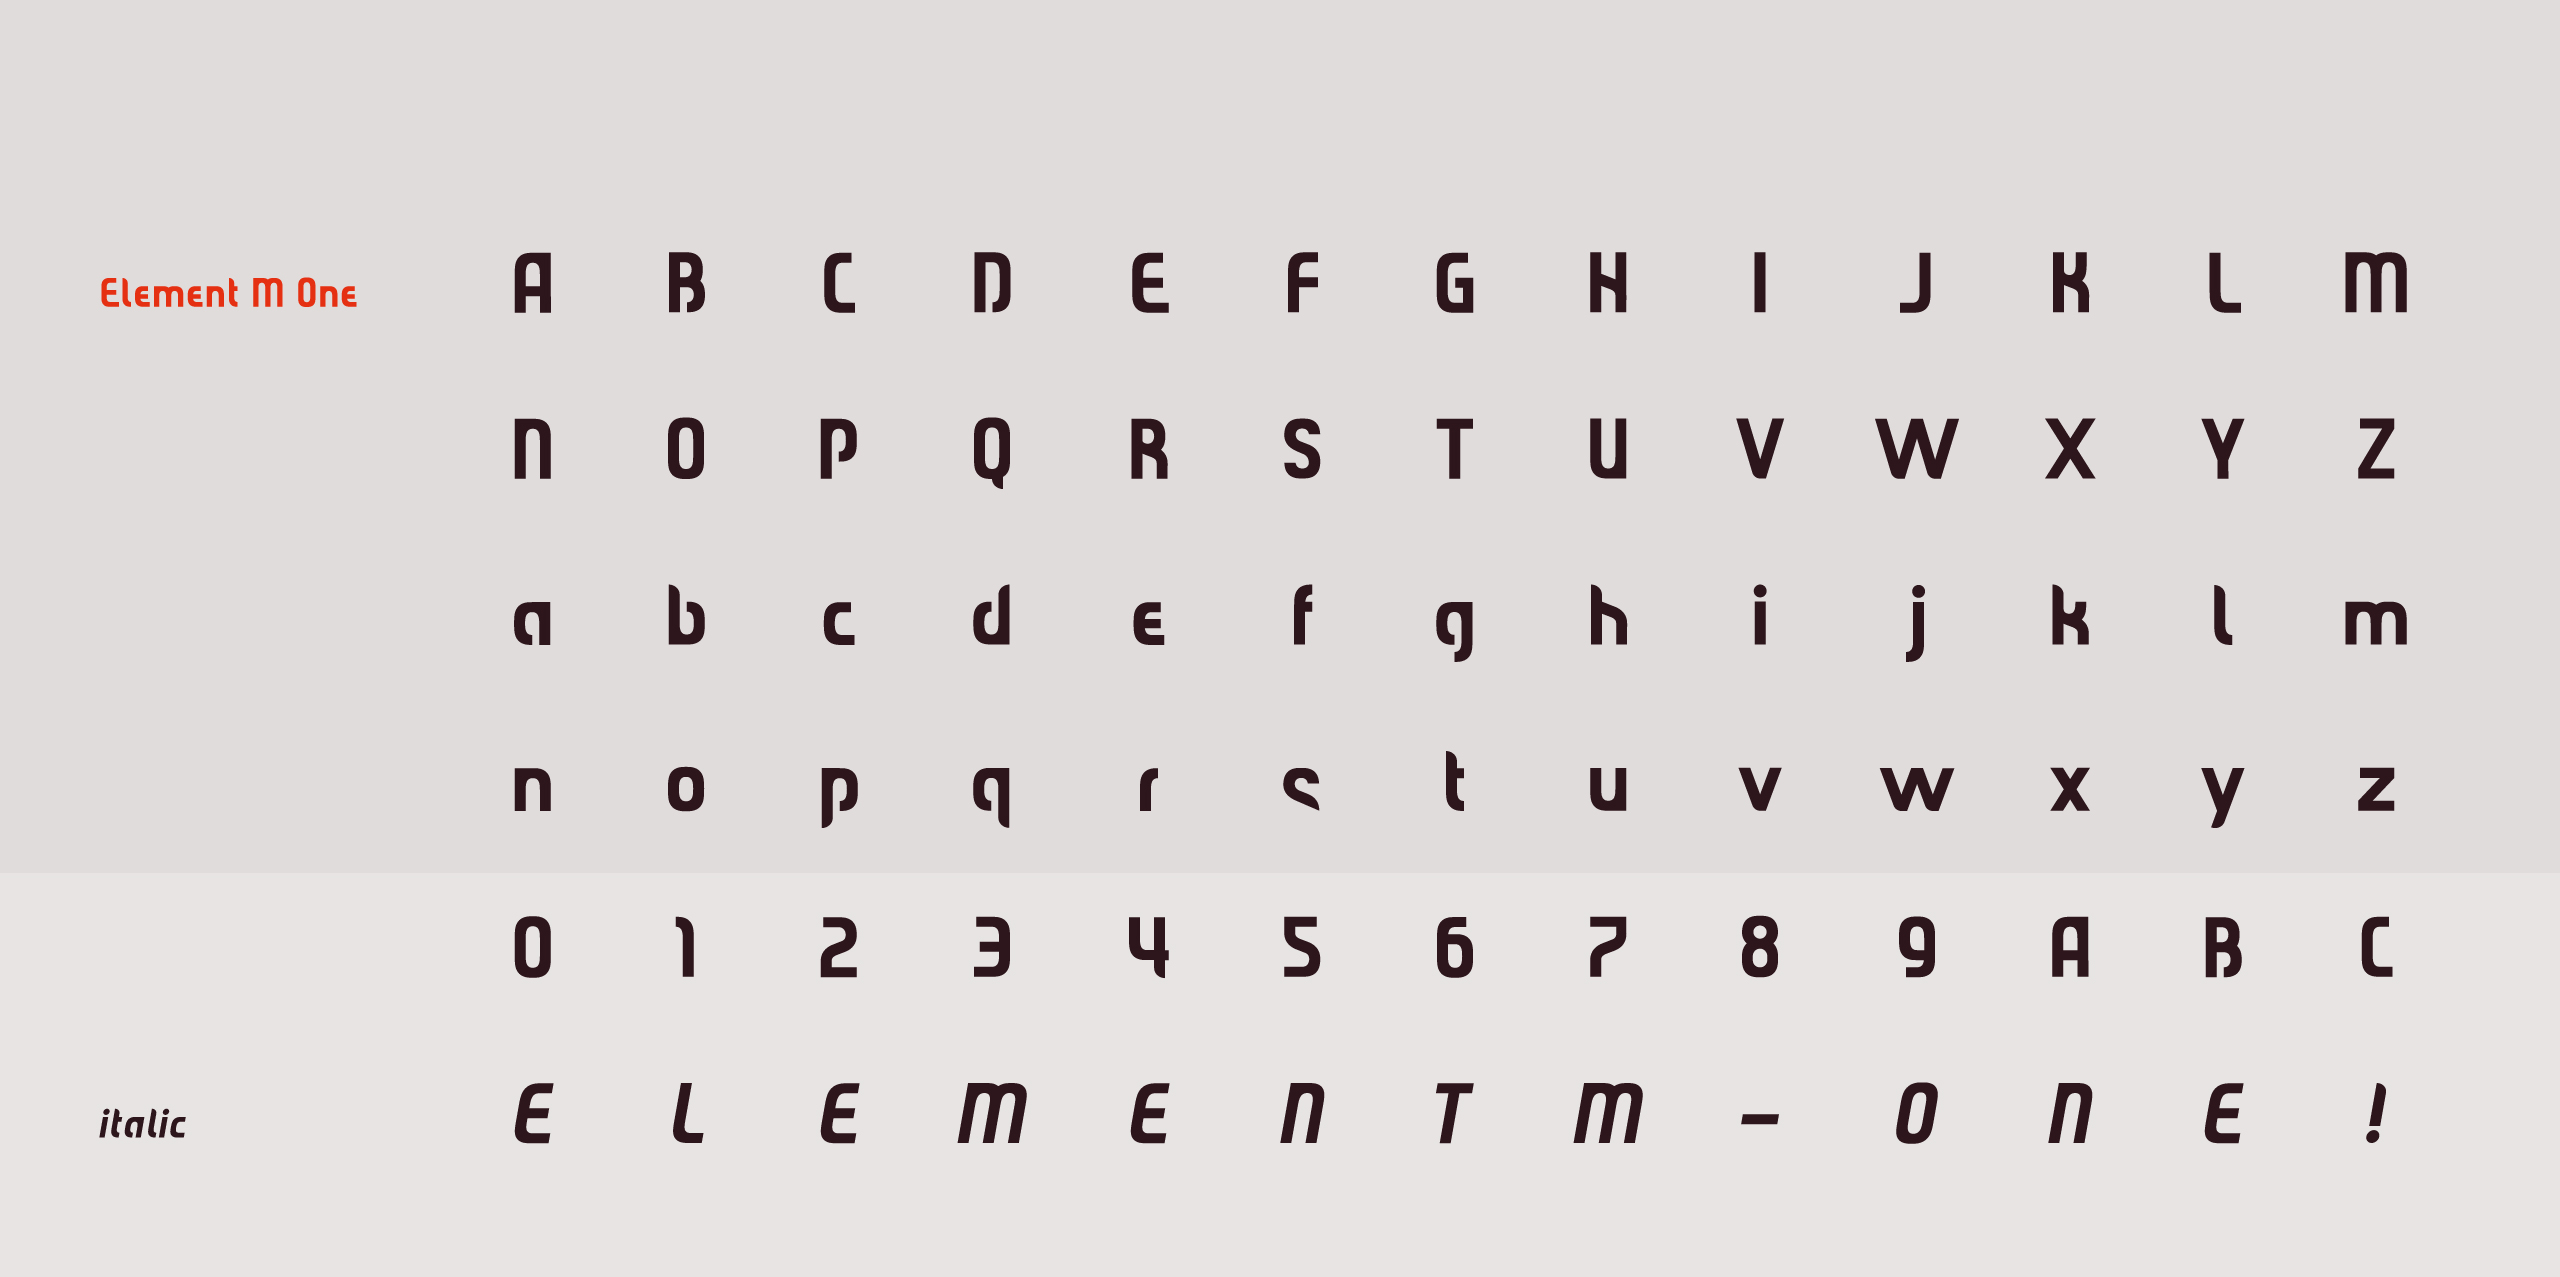 Font Element M One